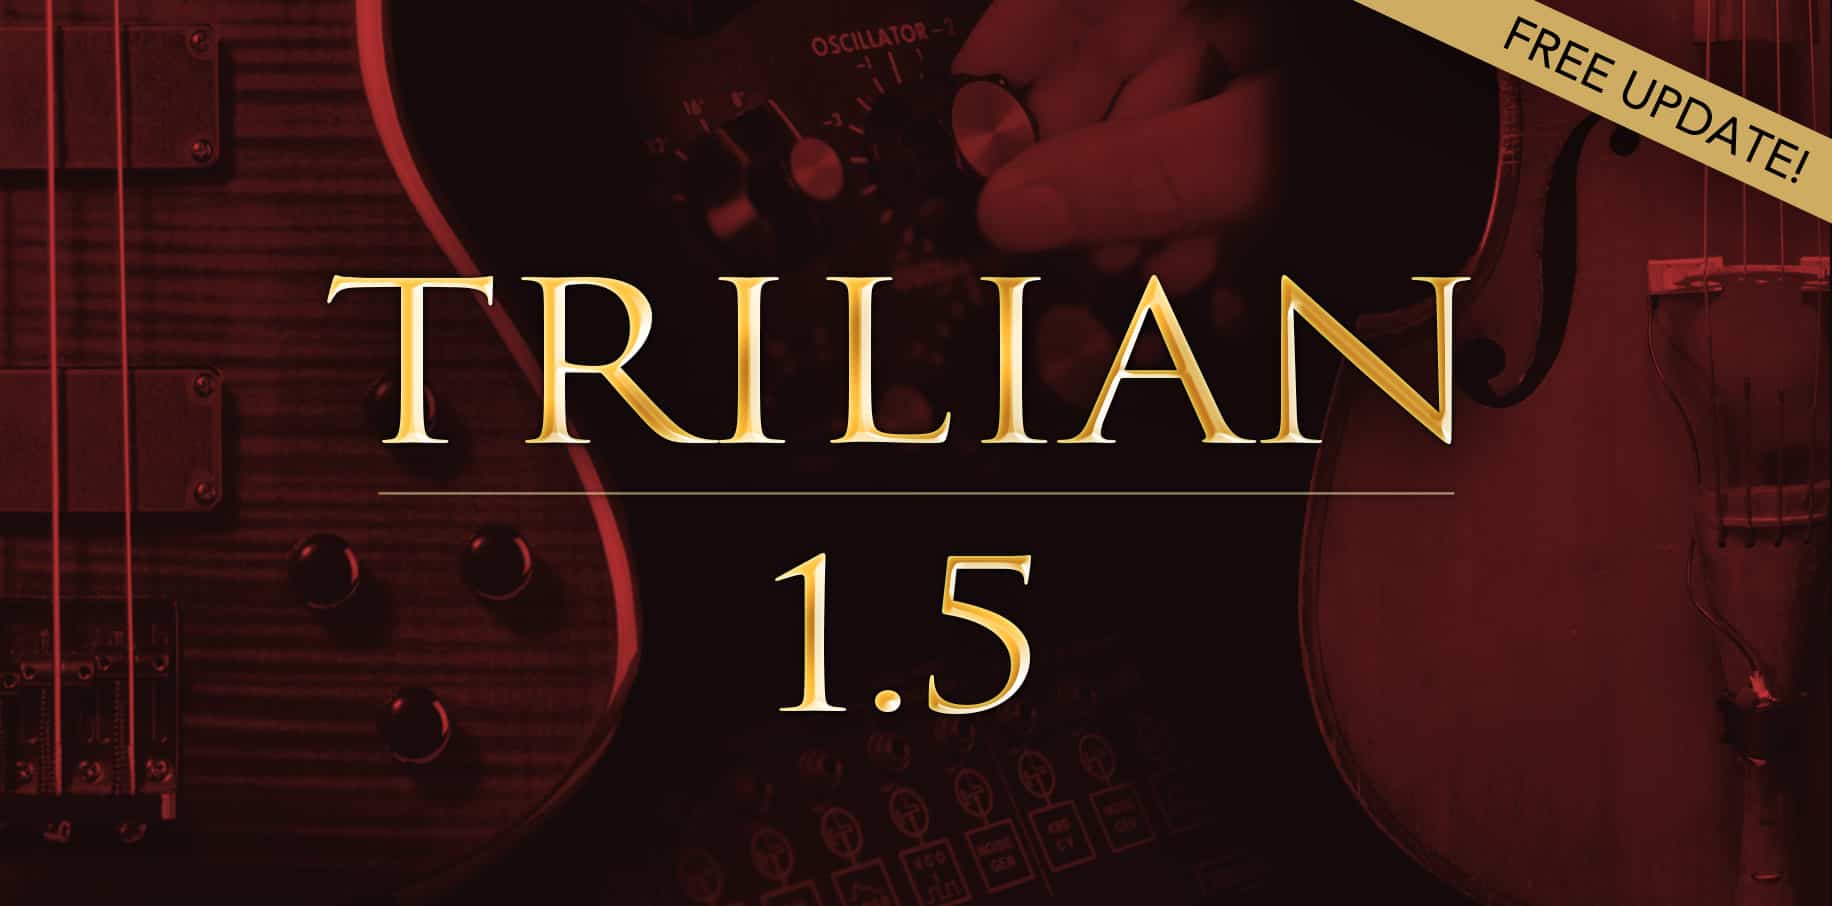 Spectrasonics Releases Trilian 1.5